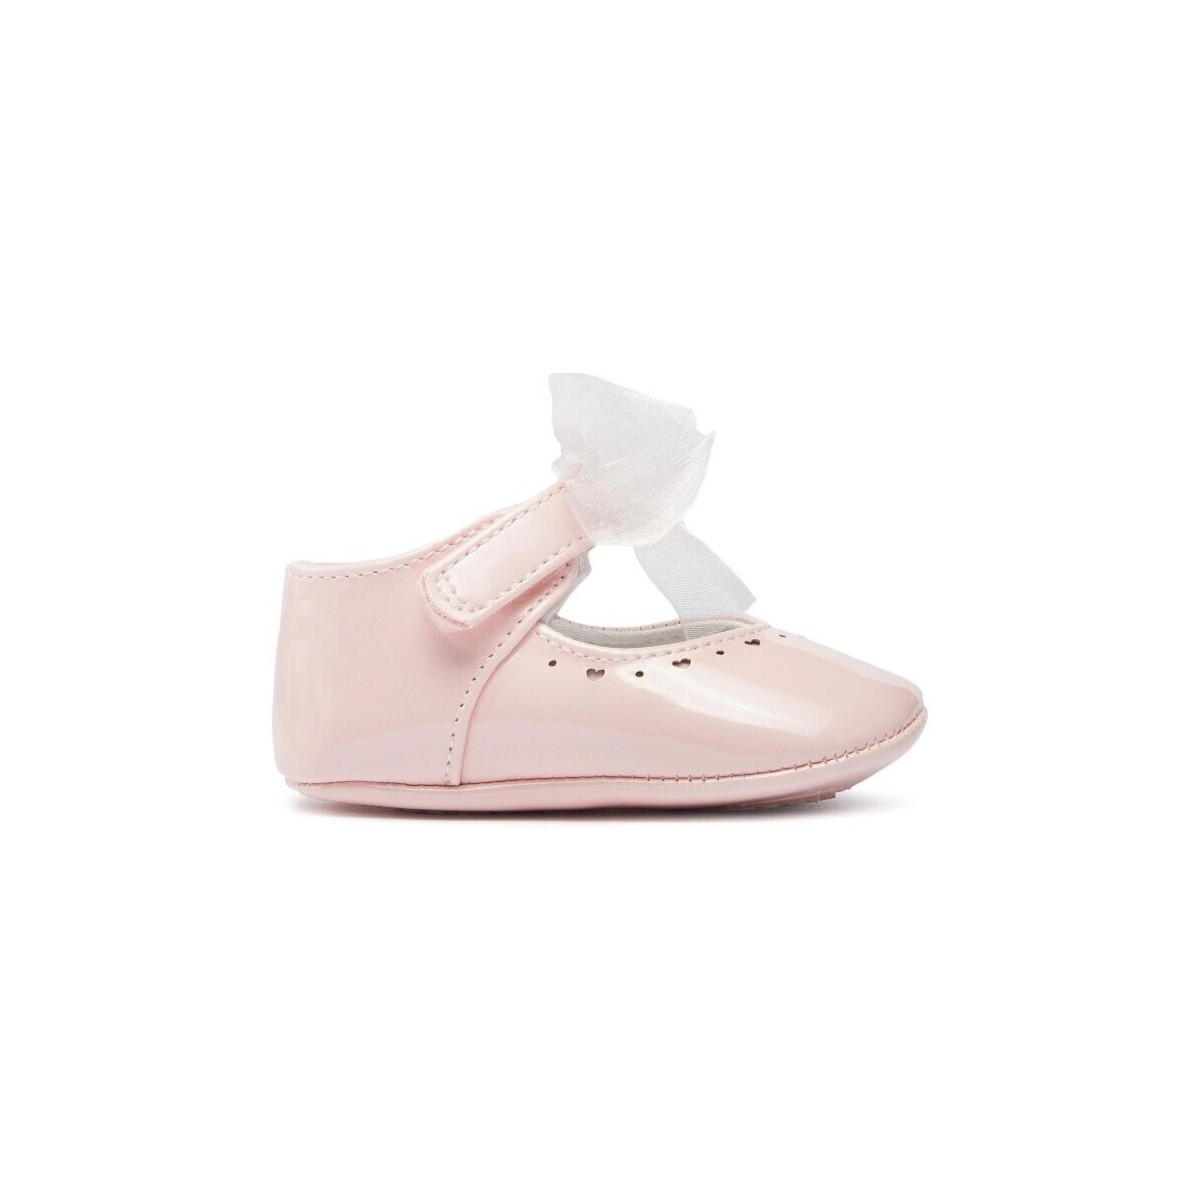 Pantofi Băieți Botoșei bebelusi Mayoral 27832-15 roz